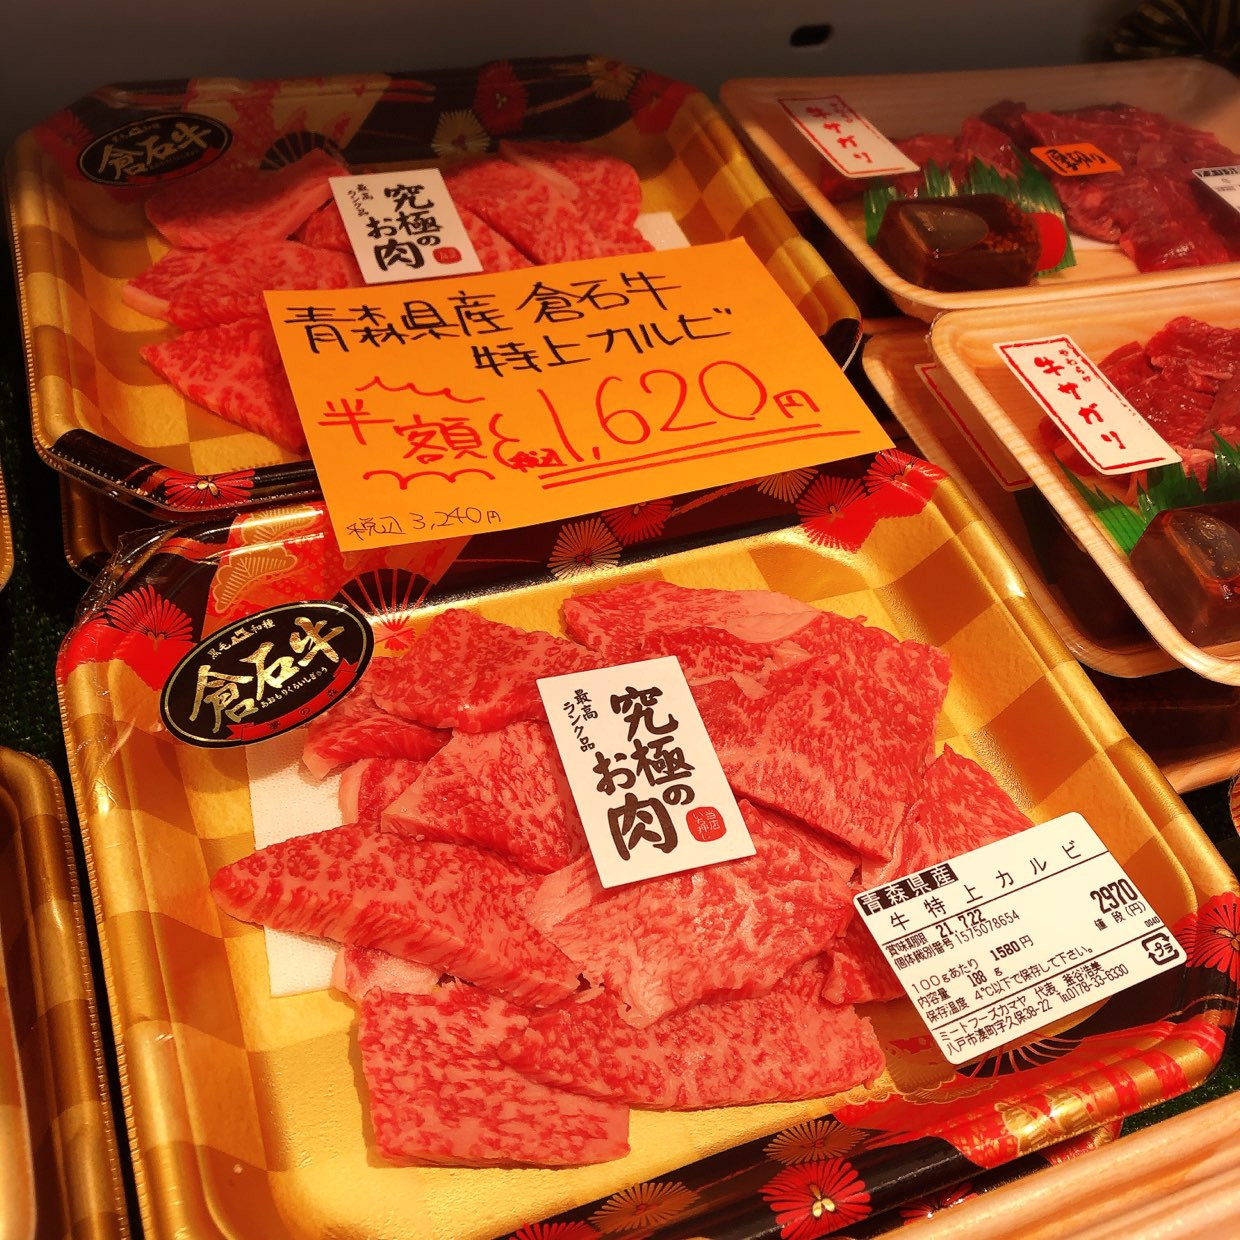 本日は青森県産倉石牛特上カルビがお買得です。